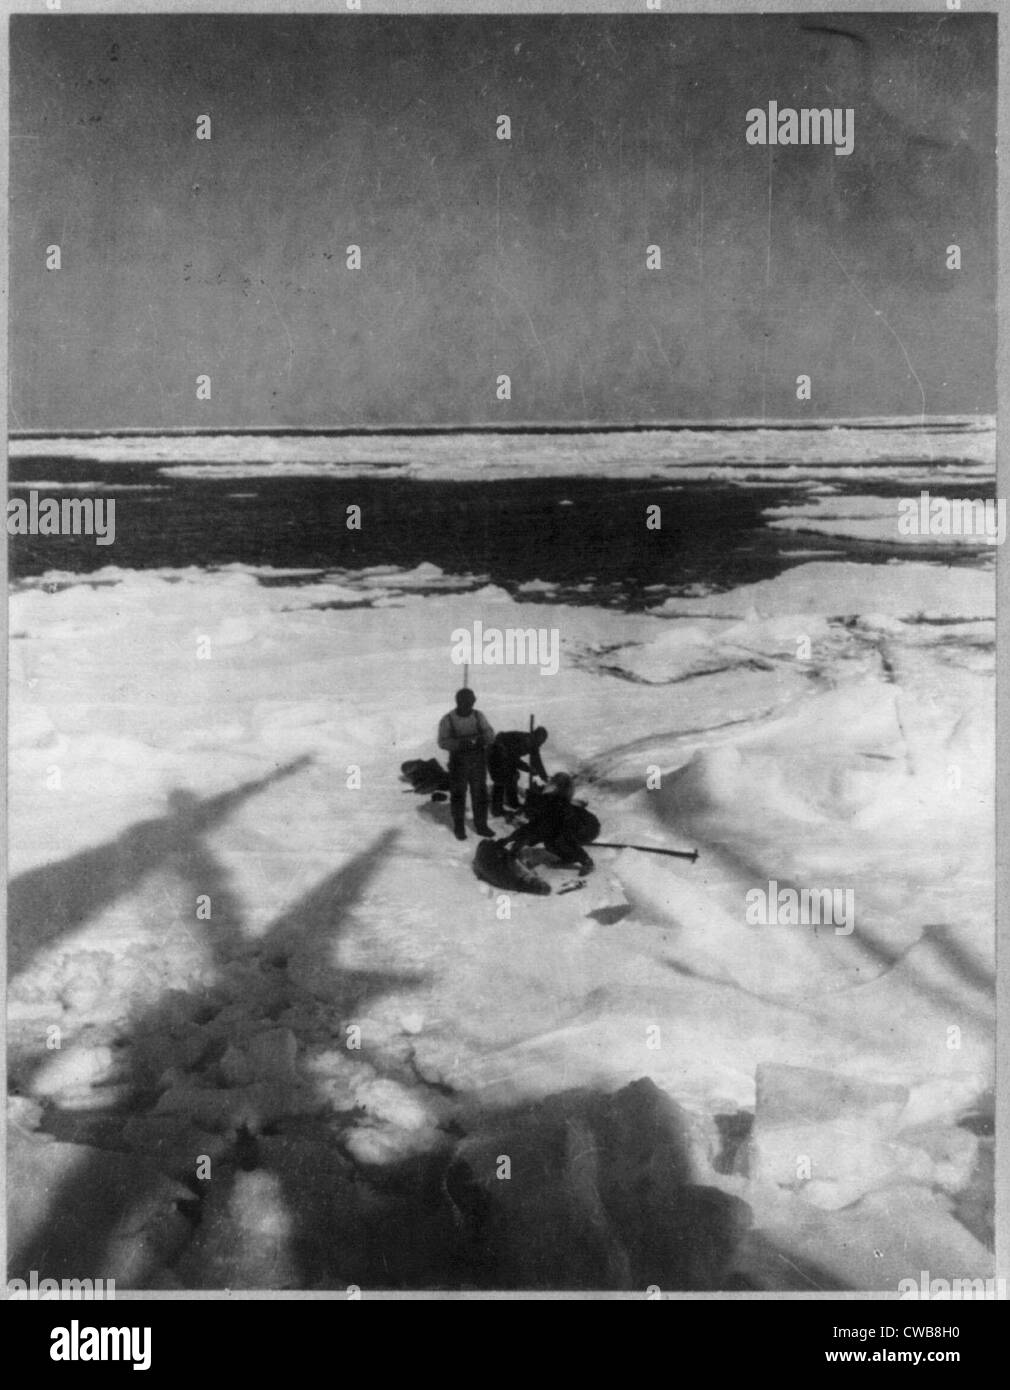 Découverte et d'exploration du pôle Sud par le capitaine Roald Amundsen et son équipage. Illustré : les membres de l'expédition la capture de phoques, Banque D'Images